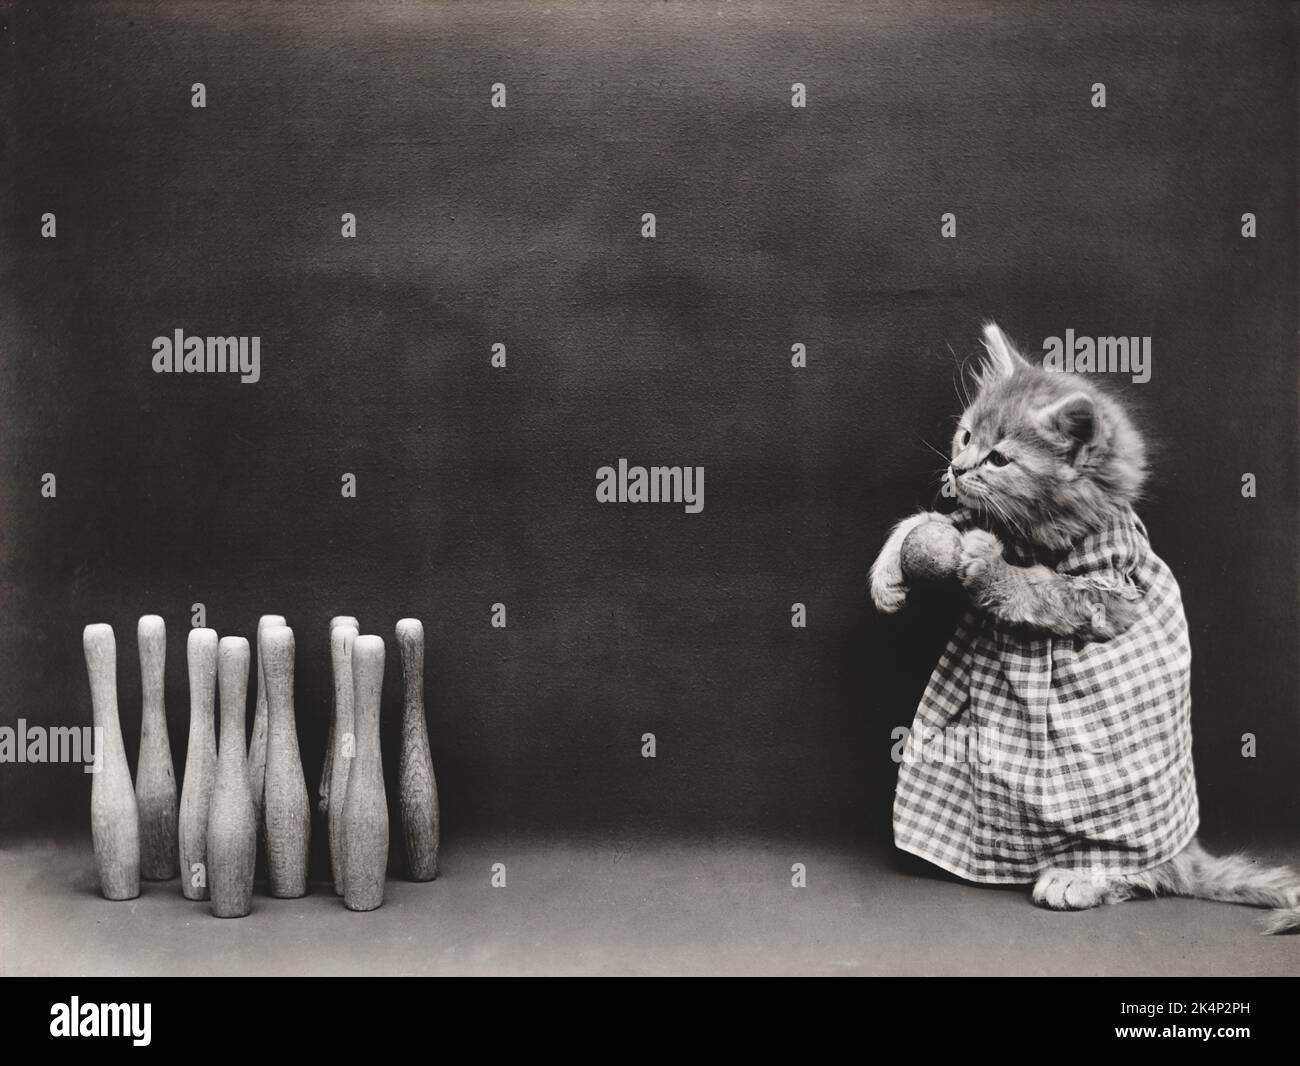 Un gattino gioca a bowling a dieci birilli in una fotografia chiamata "Ten Pins" di Harry Whittier Frees Foto Stock